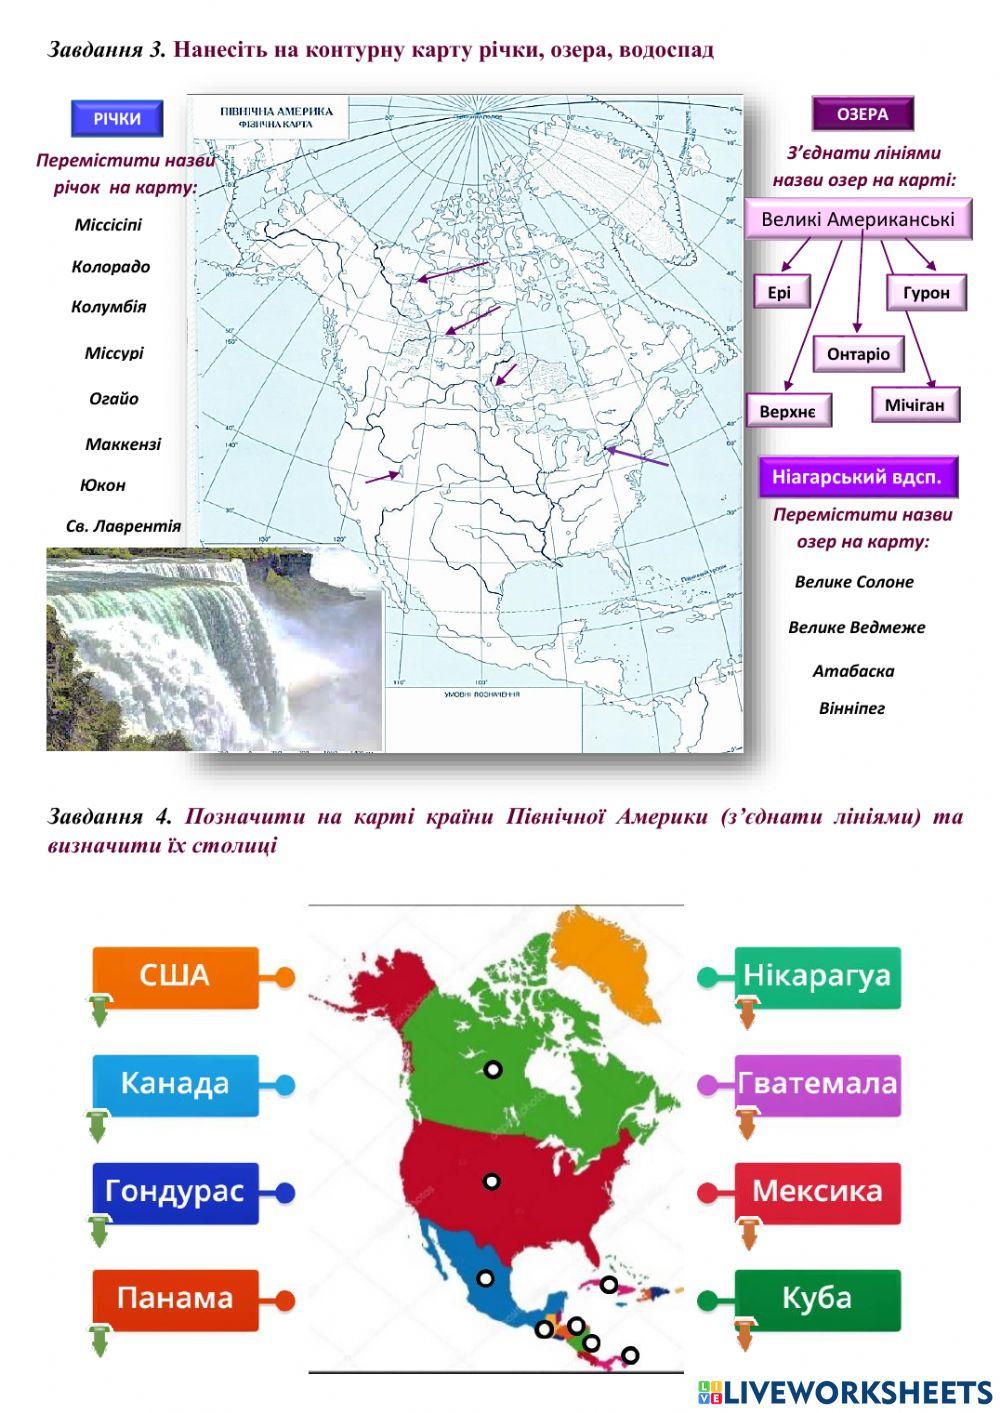 7 клас Позначення на контурній карті назв географічних об'єктів Північної Америки: рельєф, внутрішні води, політична карта